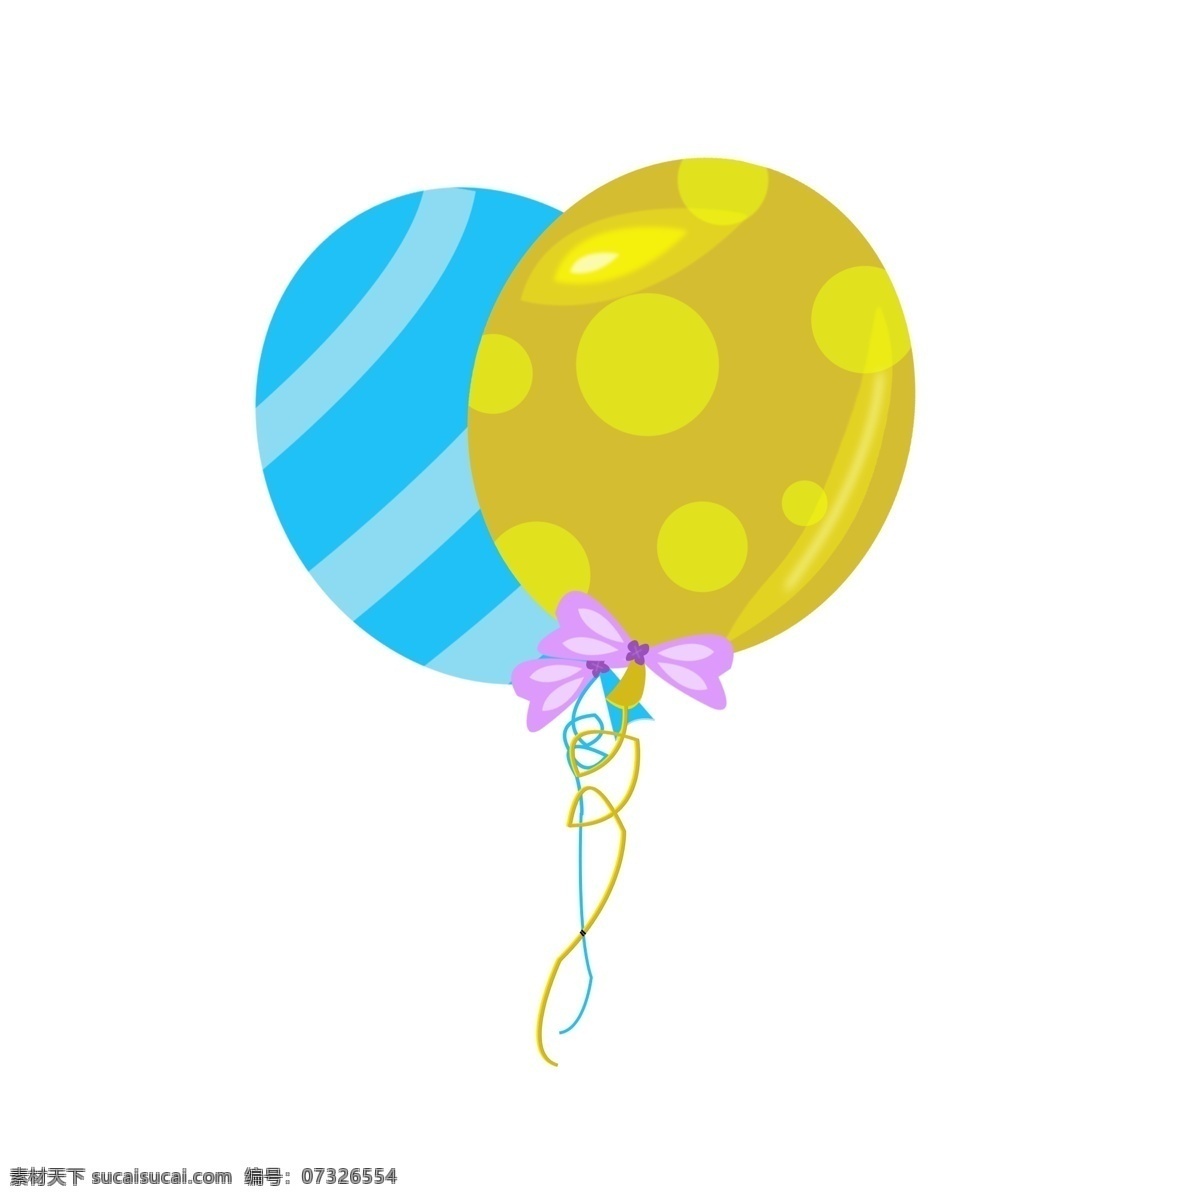 儿童 卡通 可爱 小 气球 小气球 蓝色 黄色